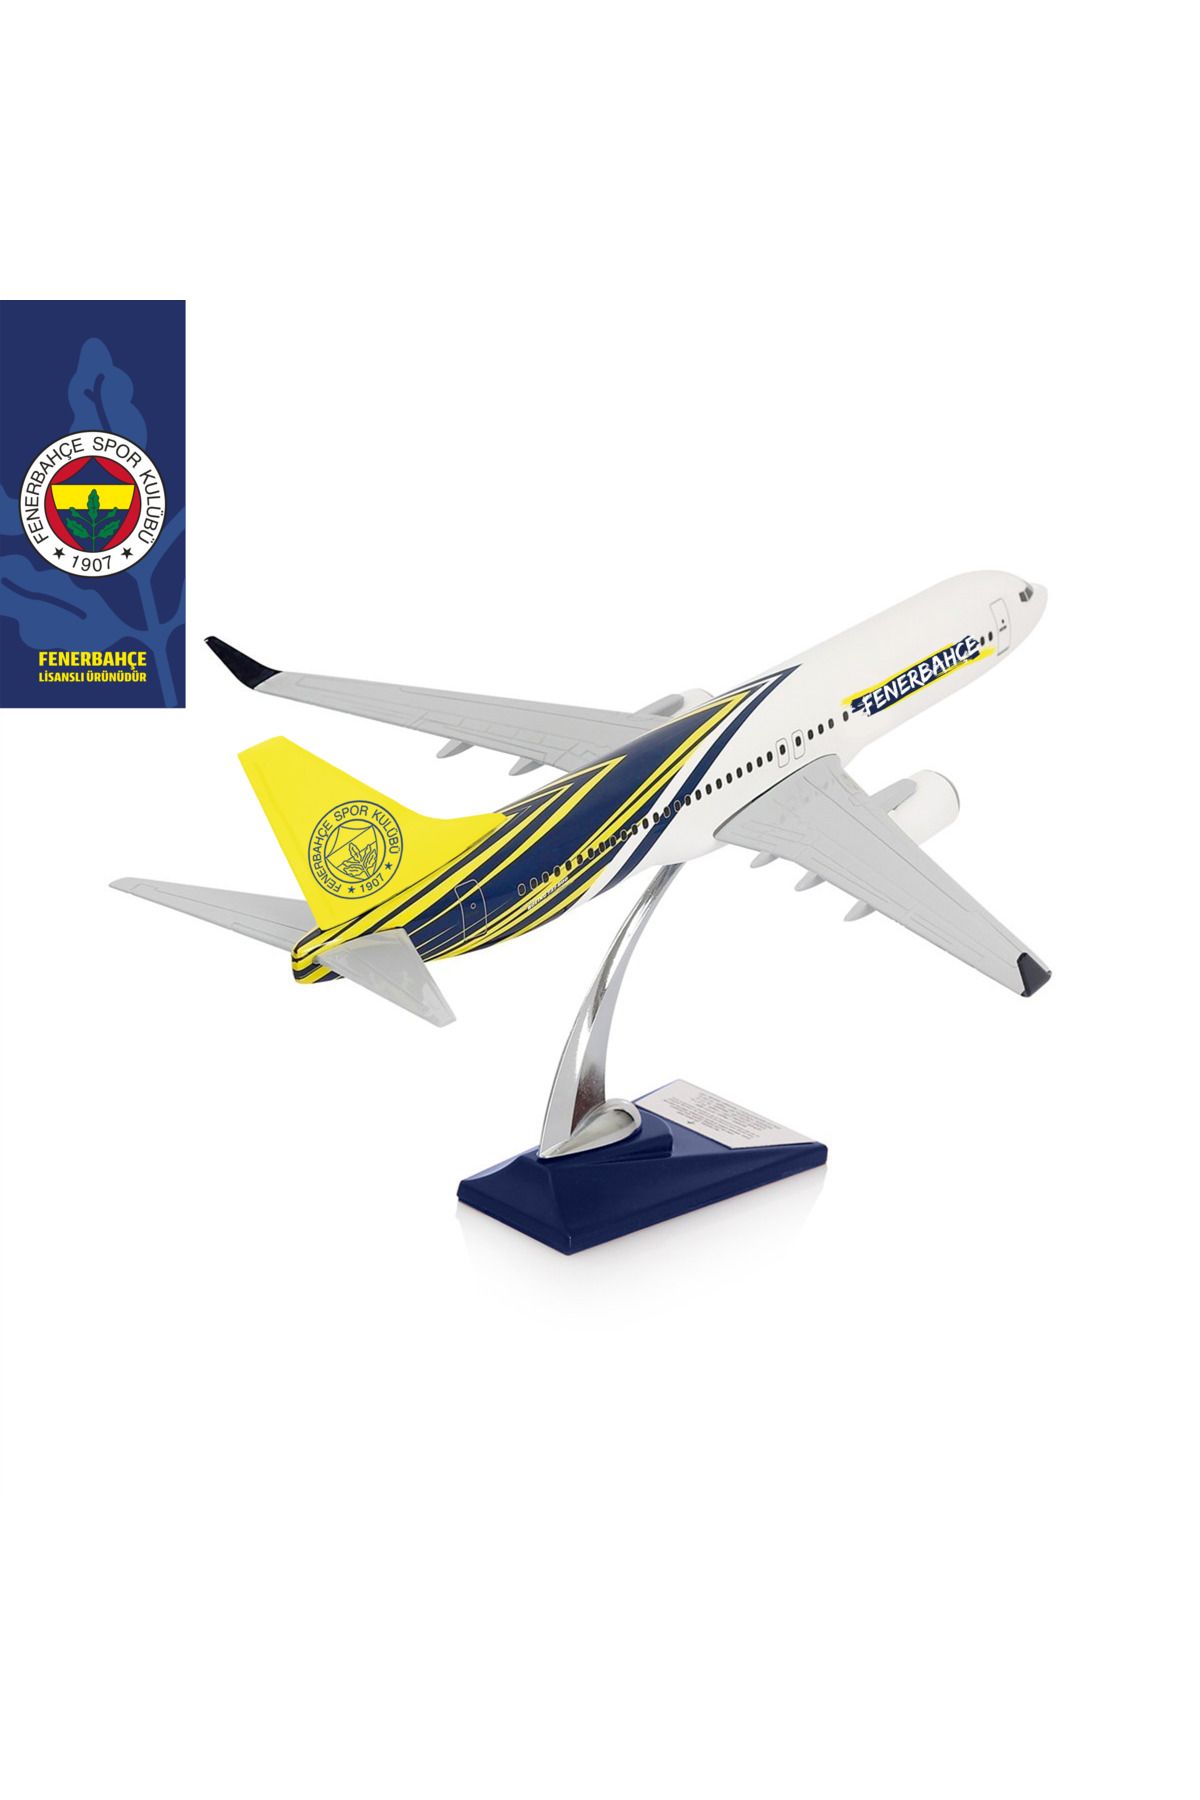 zekupp Boeing 737-800 1/100 Ölçek Fenerbahçe Lisanslı Tasarım Maket Uçak